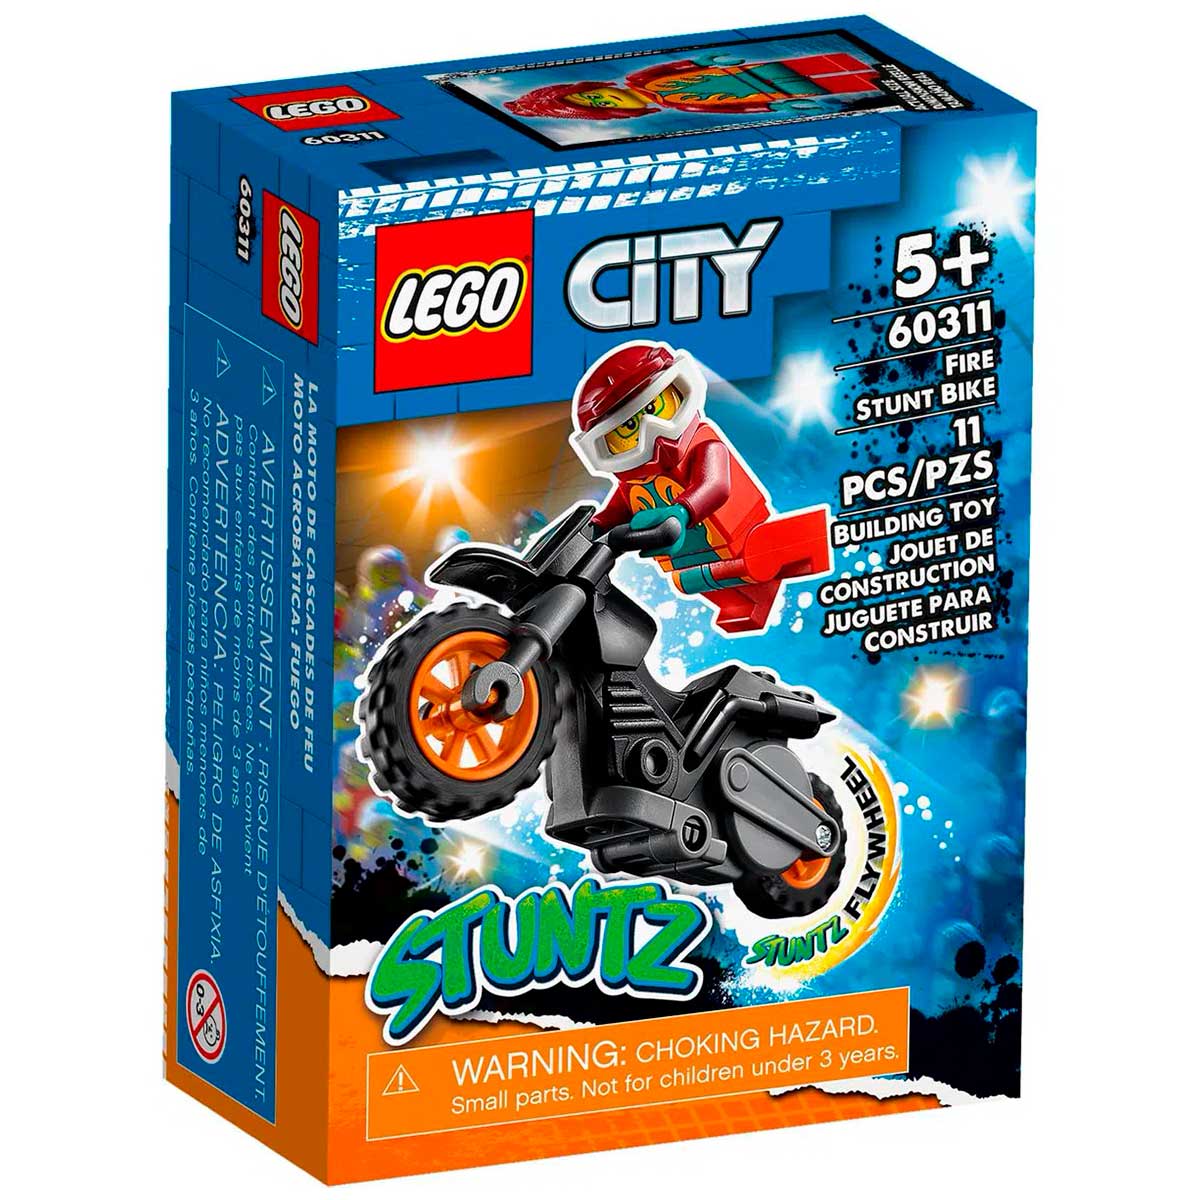 LEGO City - Motocicleta de Acrobacias dos Bombeiros - 60311